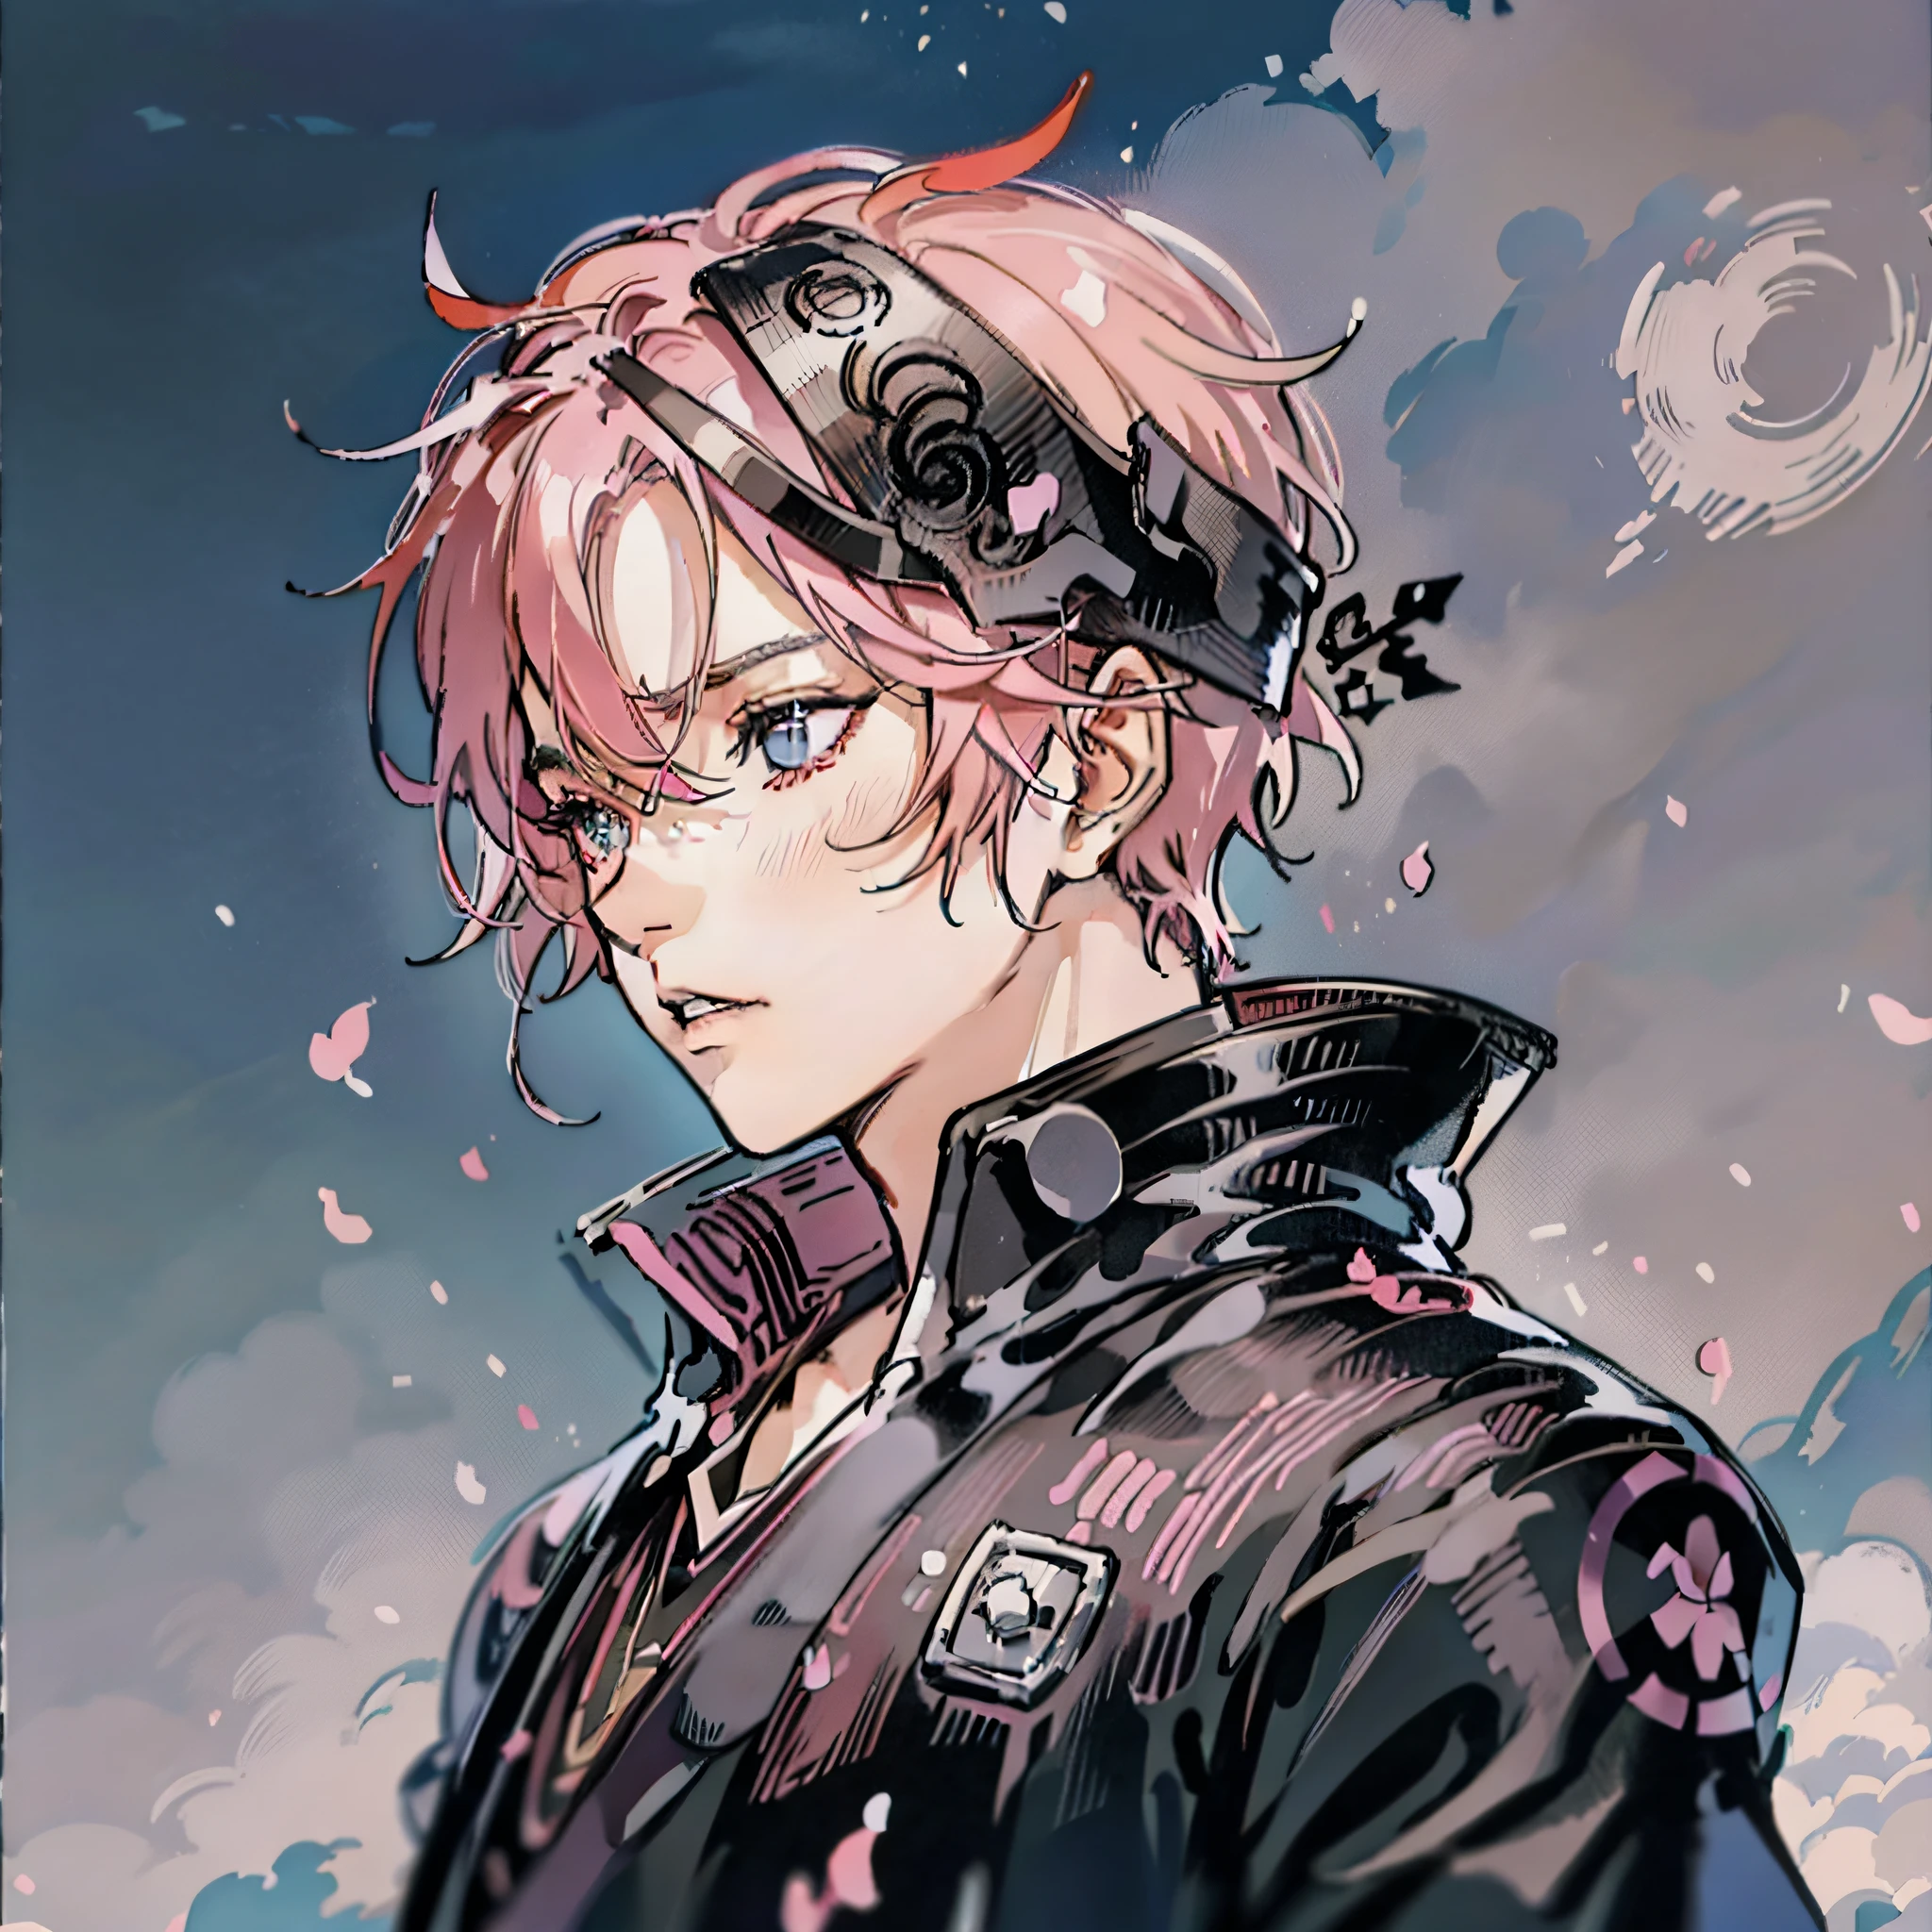 Anime menino cabelo rosa fantasia preta retrato busto, bandana preta, olhos cinzentos, best anime, badass anime, macho, arte de anime de alta qualidade.